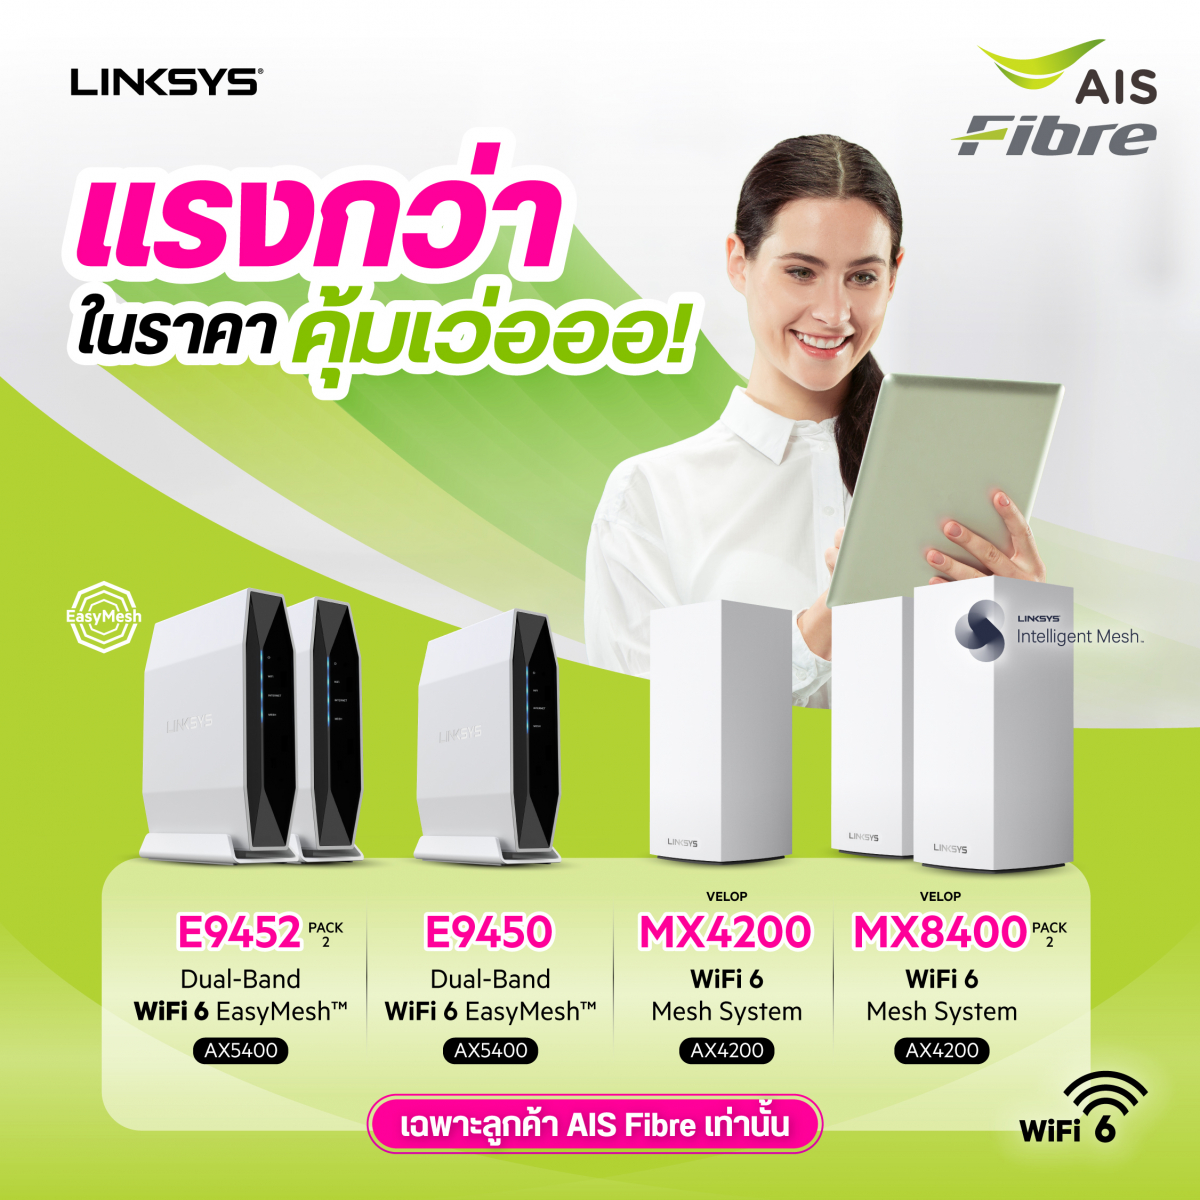 Linksysจับมือร่วมกับ AIS Fibreจัดสุดยอด Mesh WiFi 6 Router ทั้ง EasyMeshTMและ Intelligent MeshTM ให้ลูกค้าเป็นเจ้าของได้ในราคาสุดพิเศษที่ AIS Online Store